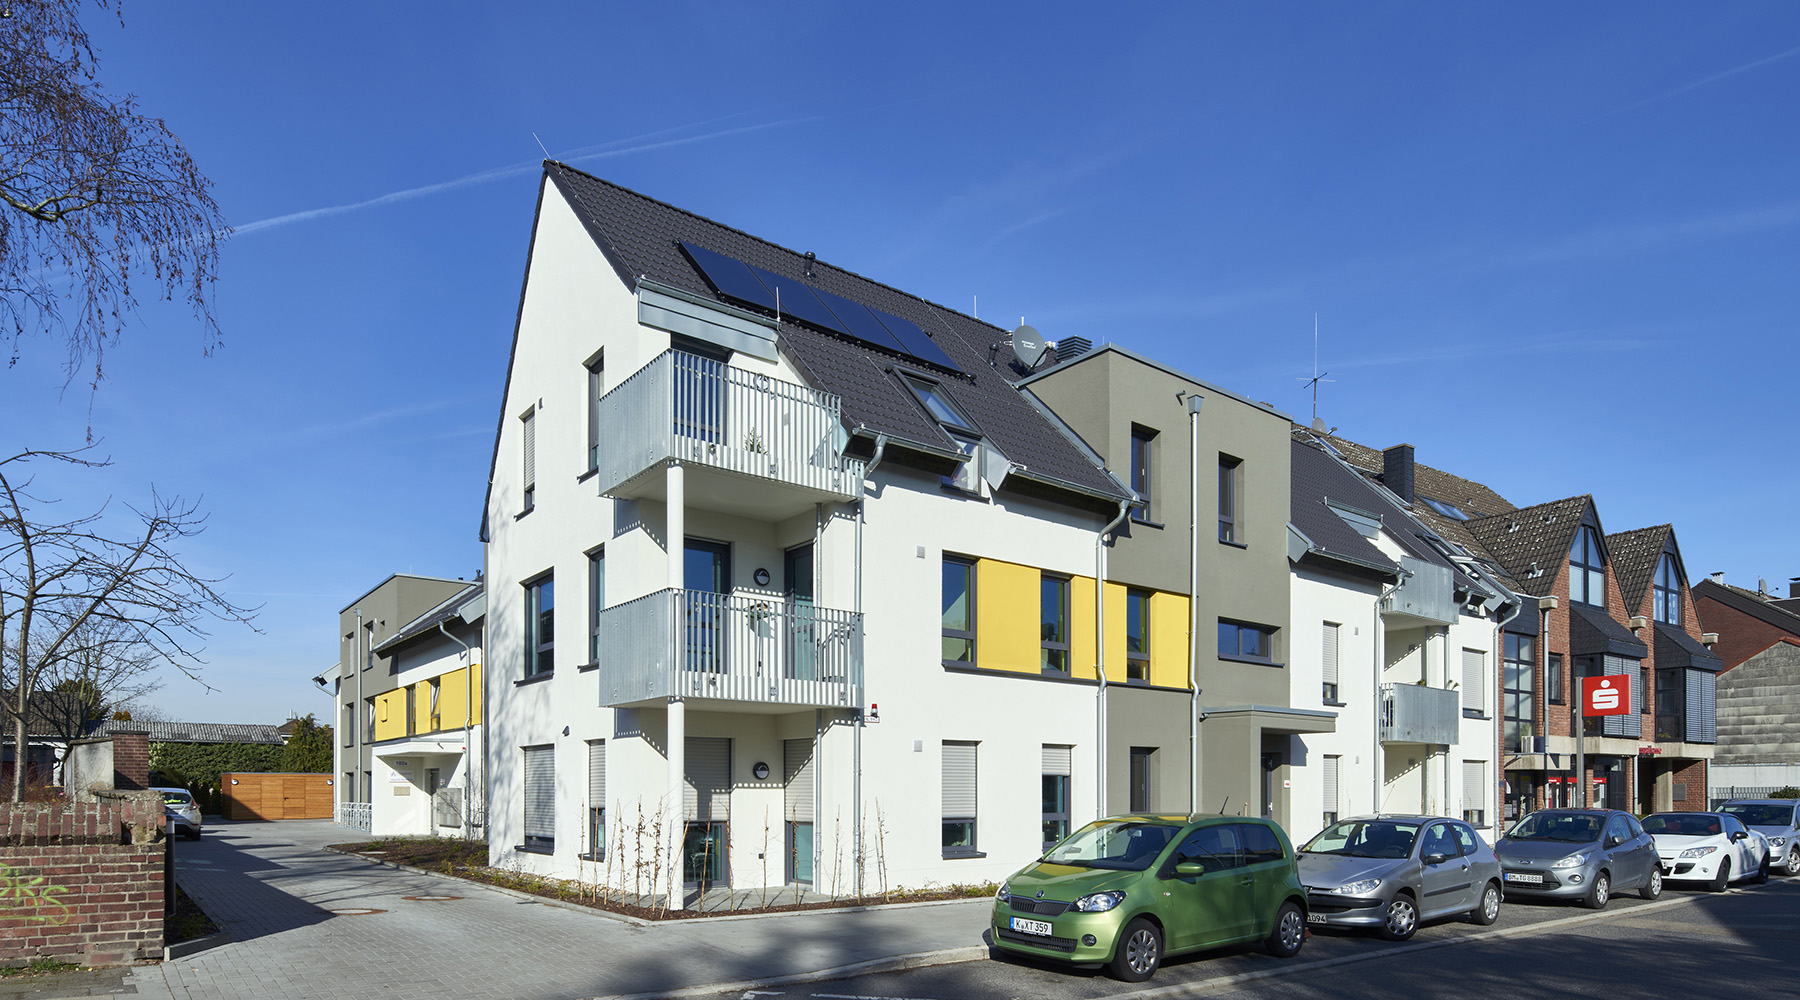 Ein modernes Gebäude mit Zeltdach und Balkonen. Es ist überwiegend weiß, mit grauen und gelben Elementen.